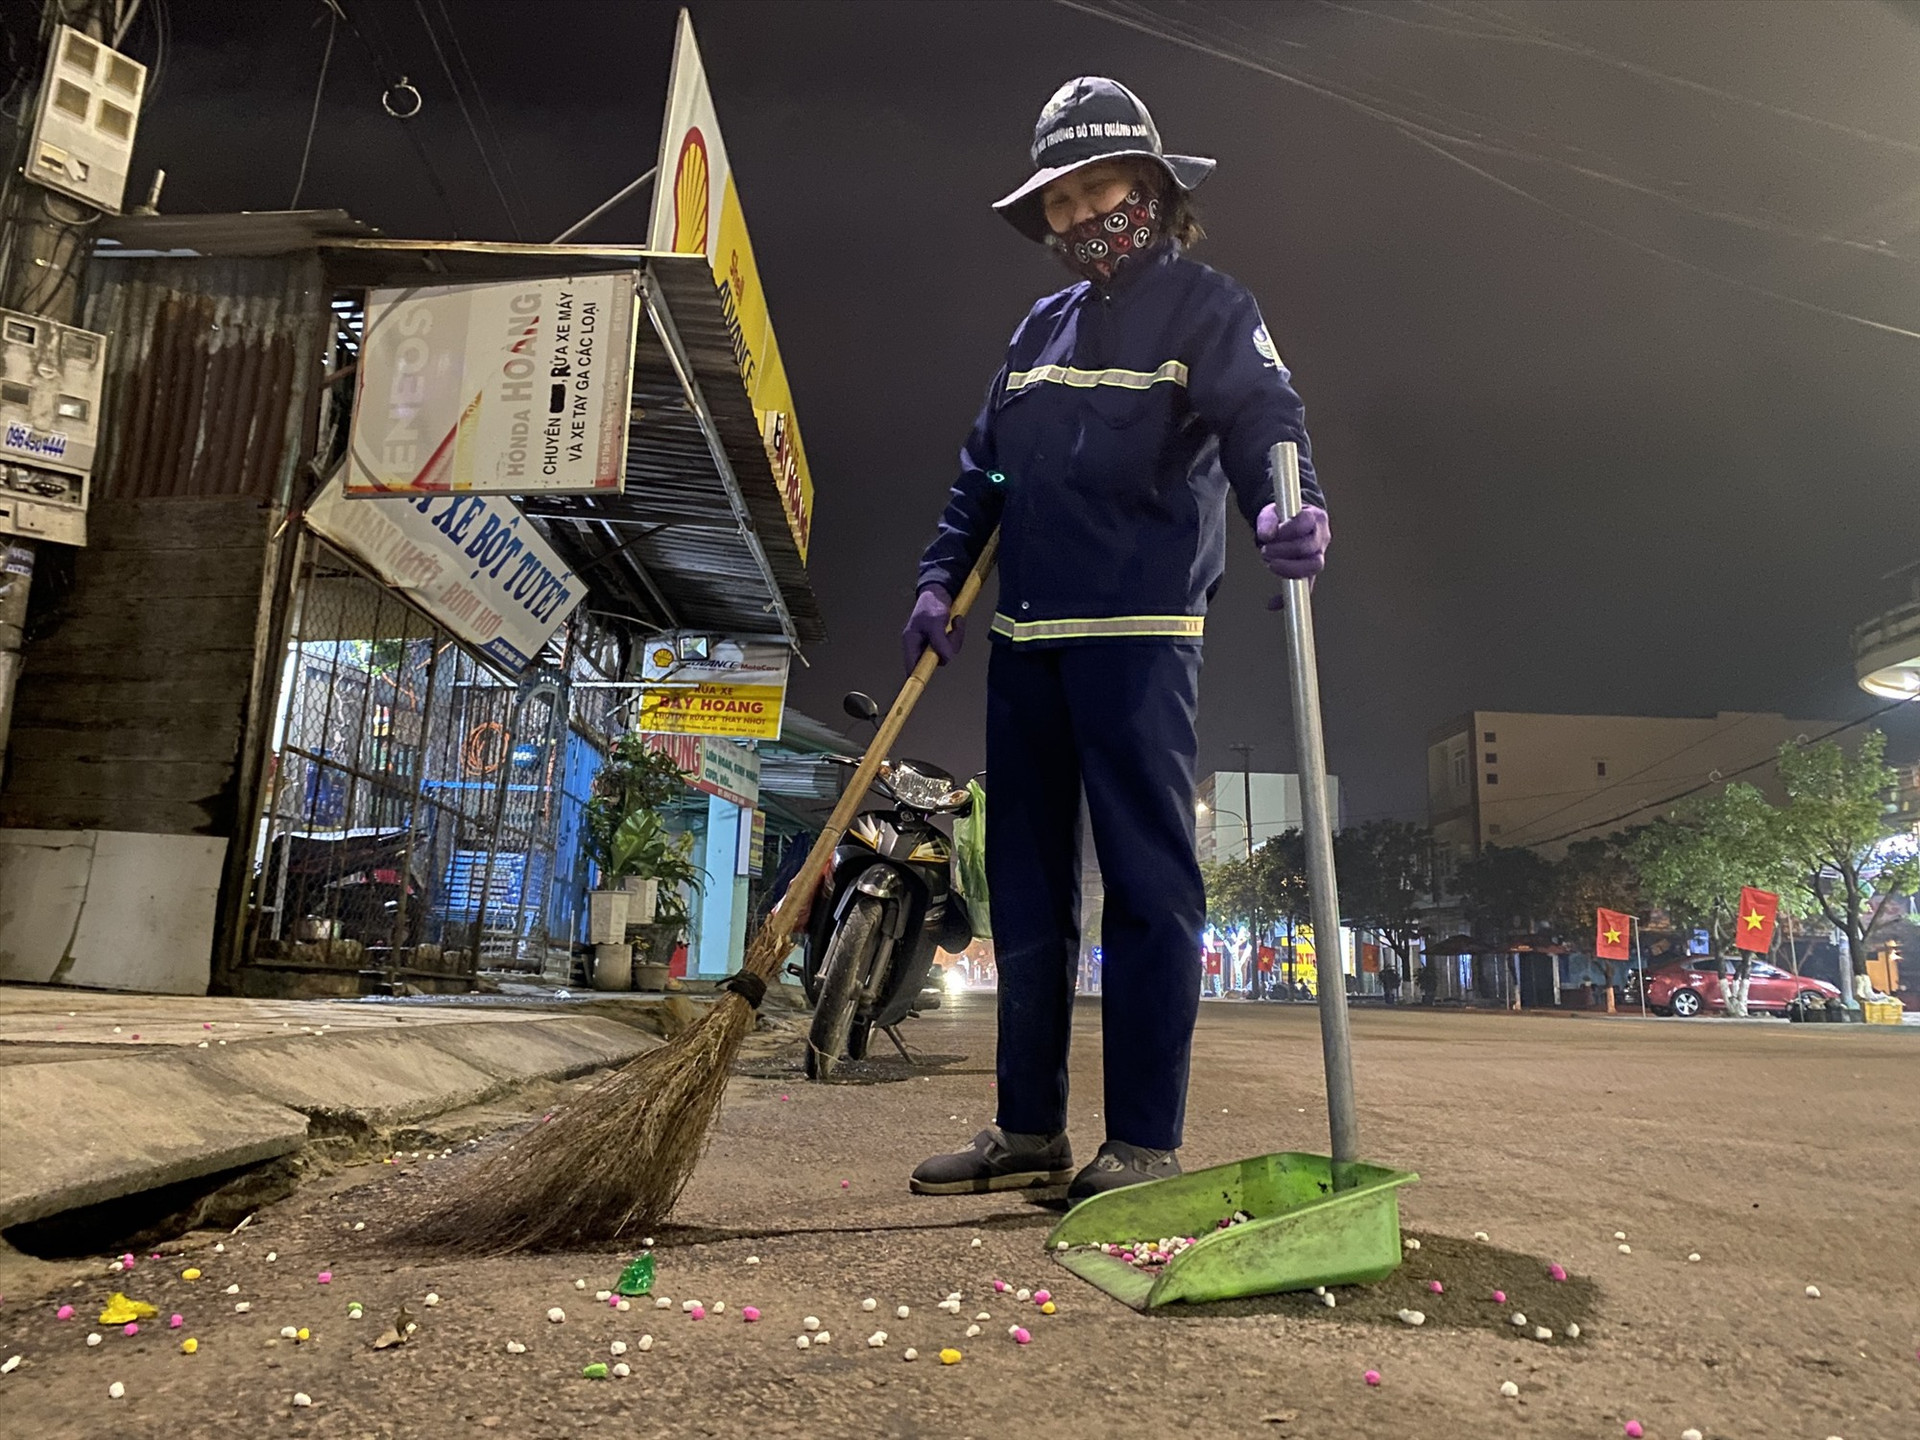 Dù vất vả, nhưng những người công nhân vệ sinh môi trường luôn tự hào về nghề của mình, vì họ đã và đang góp sức làm cho phố xá thêm xanh, sạch, đẹp.